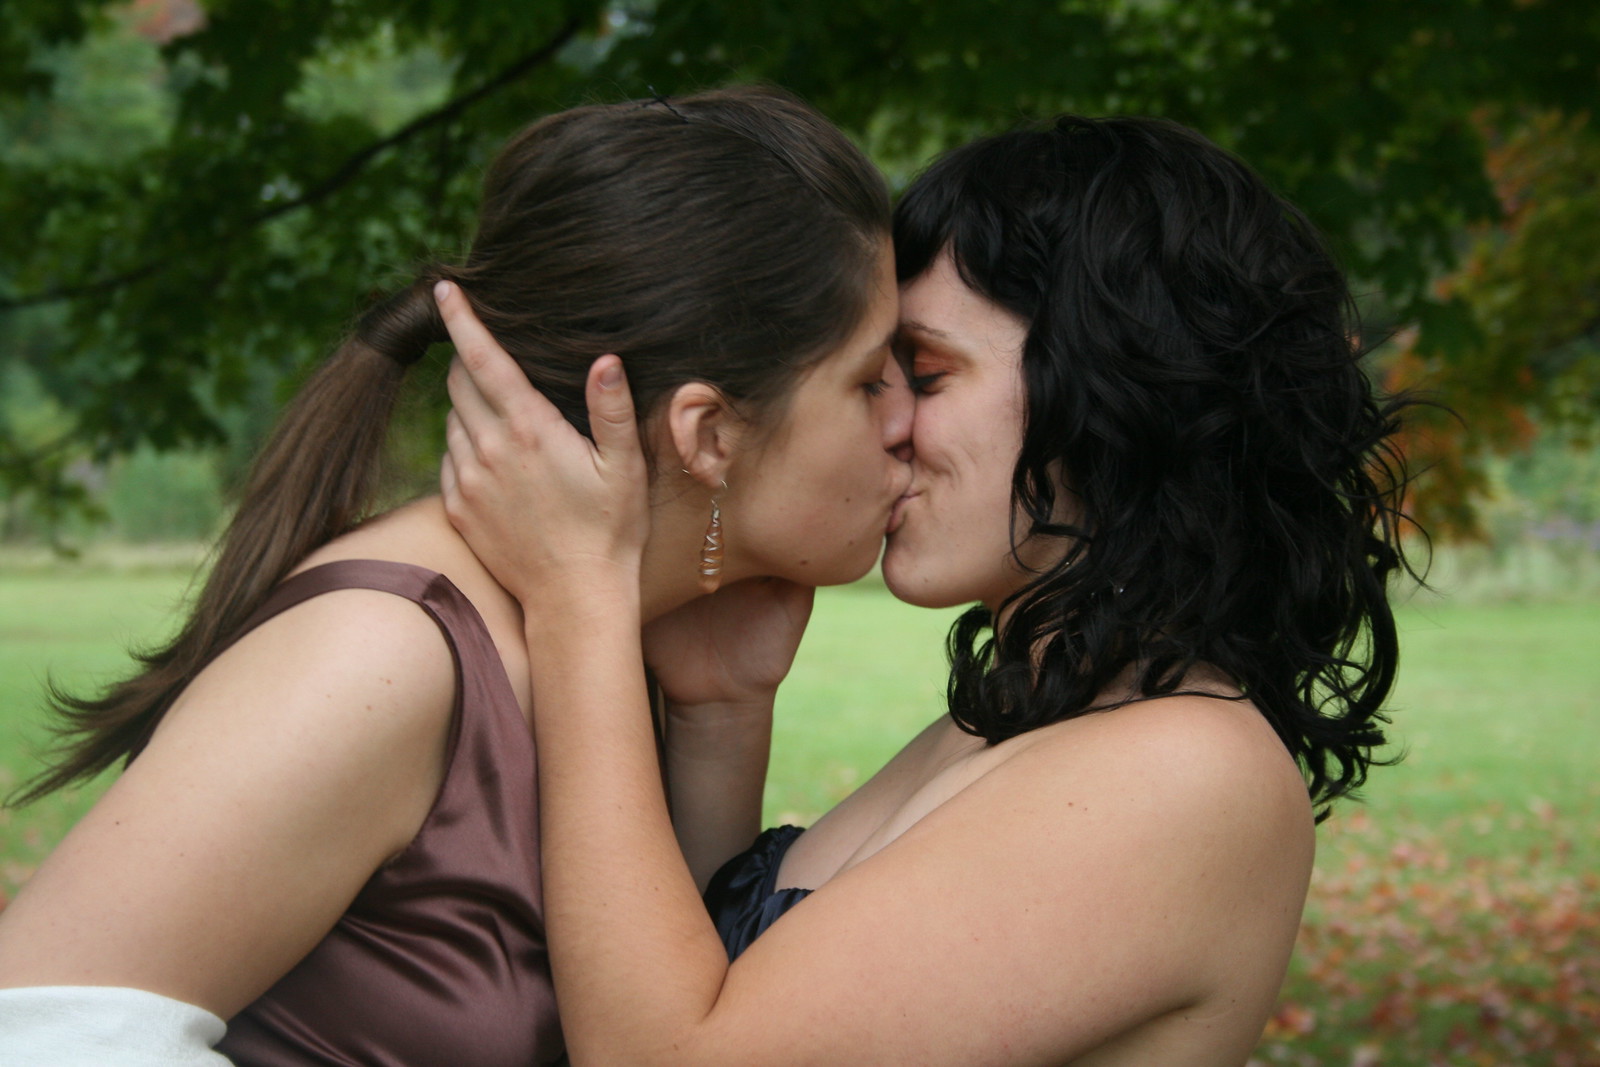 Лесбиянки для разнообразия устроили групповуху с мужественным военным